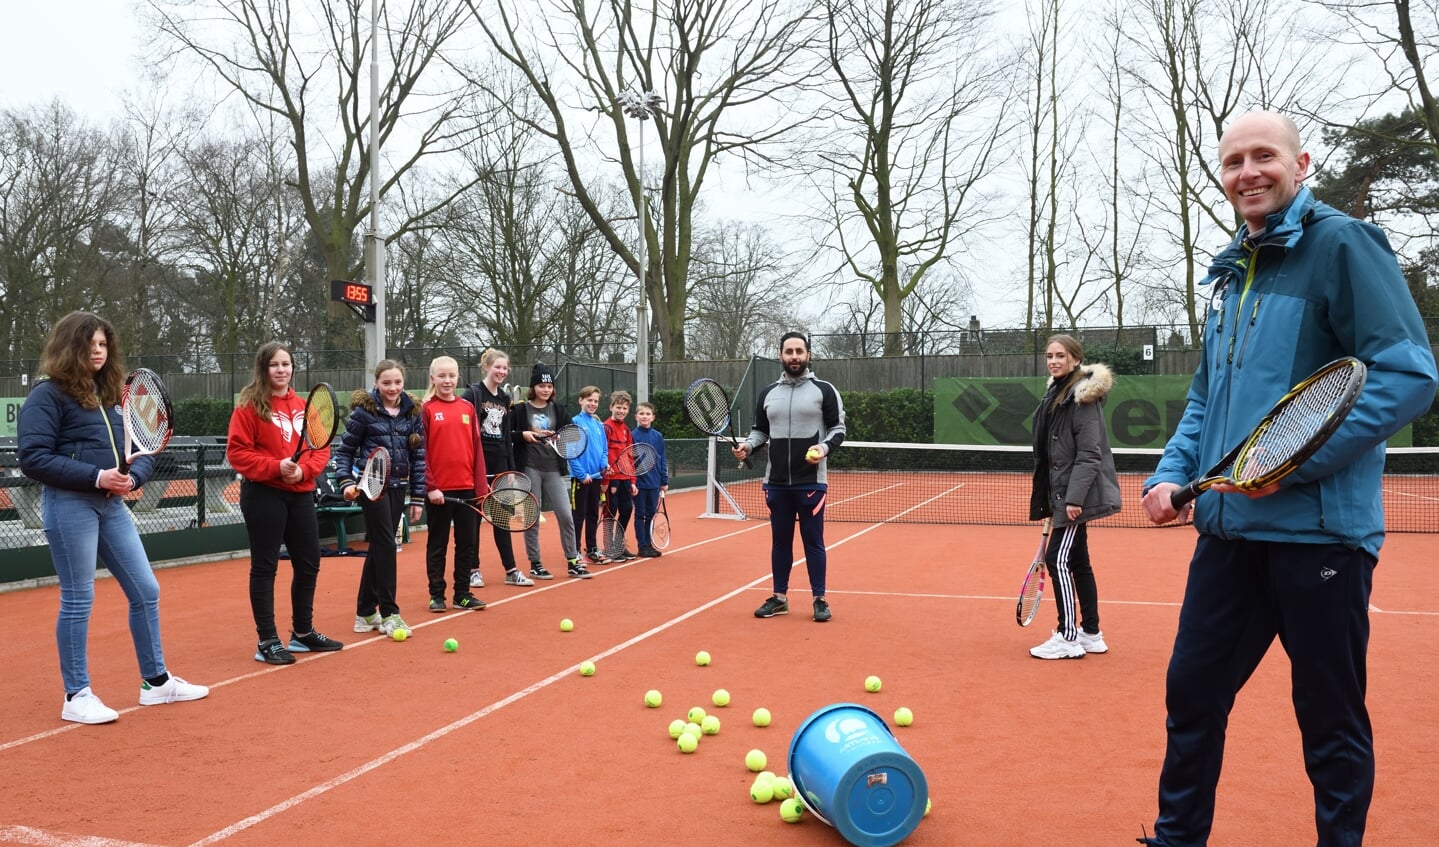 Tennistrainer Koen met op de achtergrond Meike, Ali en de jeugd tijdens de tennisles